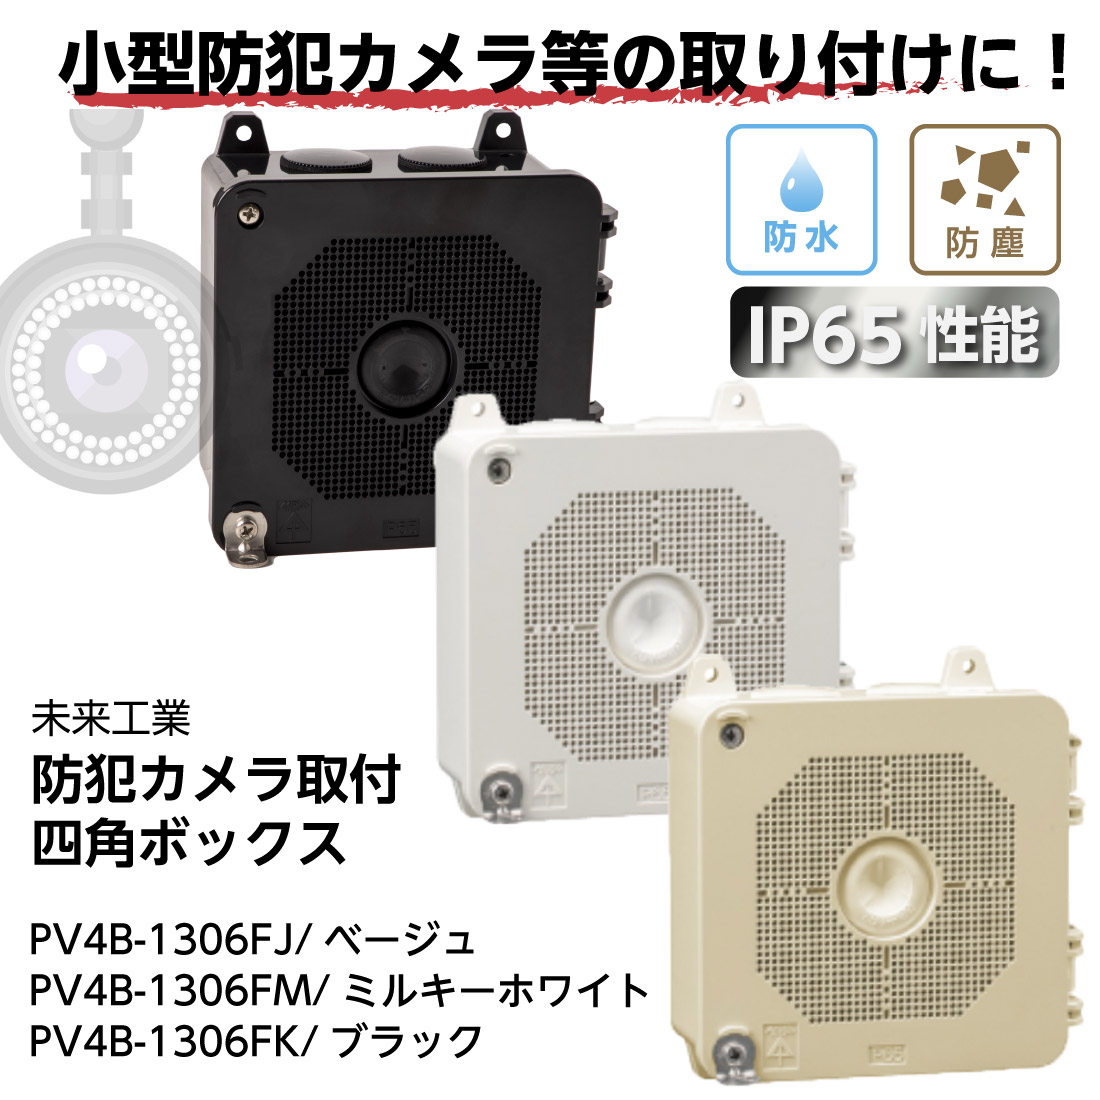 即配】PV4B-1306F 防犯カメラ取付四角ボックス IP65性能 ベージュ ミルキーホワイト ブラック 小型防犯カメラ等の取り付けに パッキン付き  mirai ミライ 未来工業 | すべての商品 | プロポチ 公式オンラインショップ